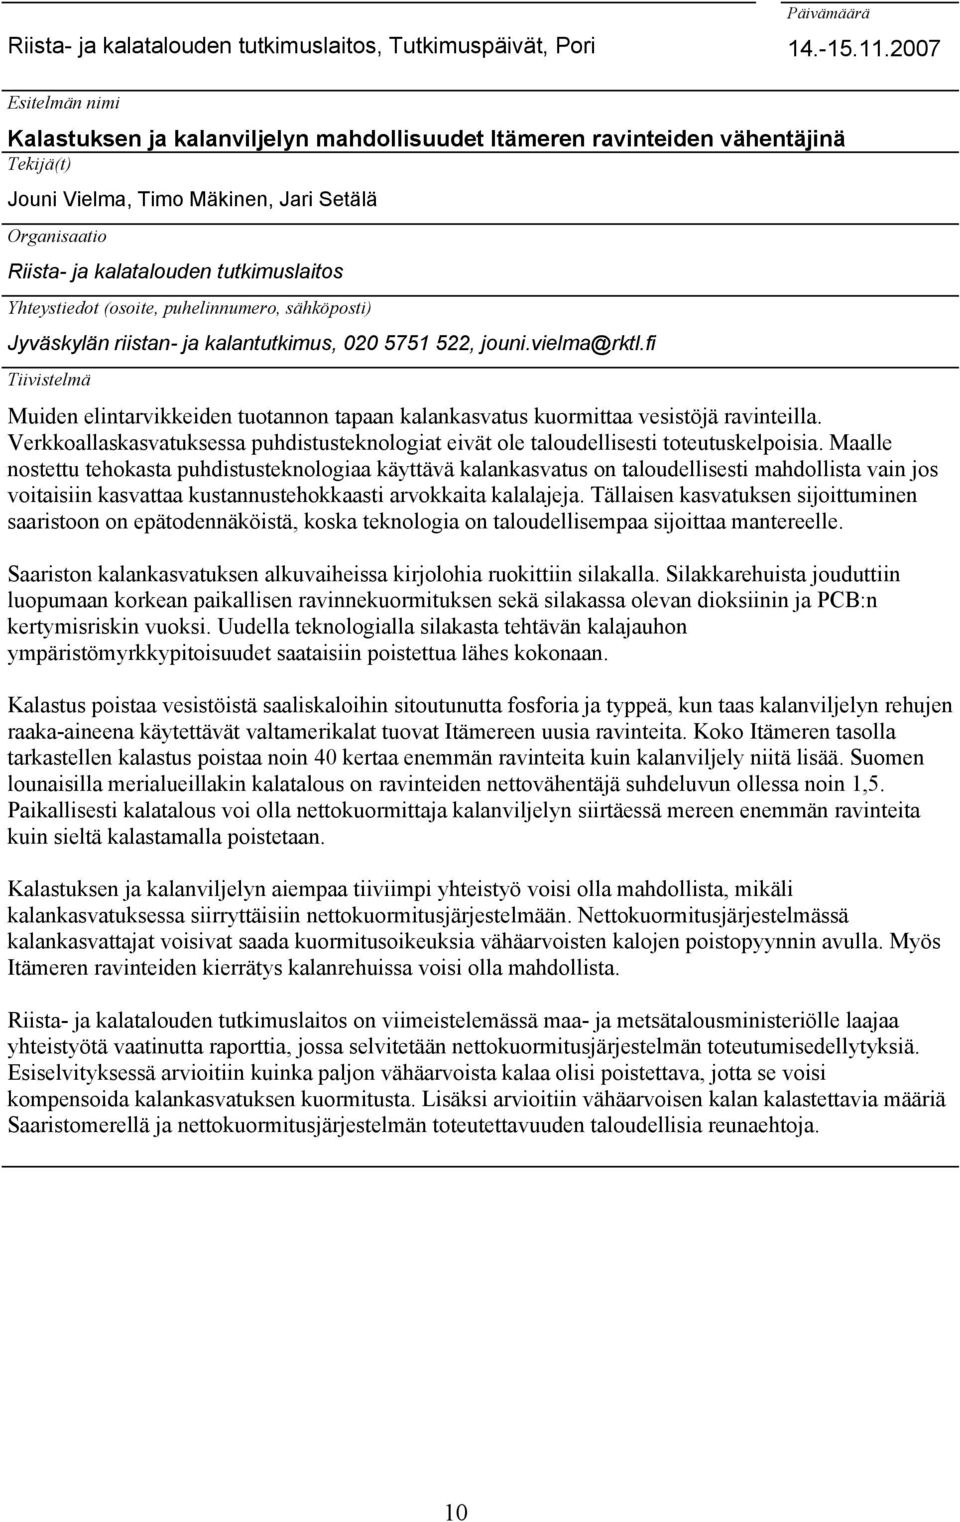 Yhteystiedot (osoite, puhelinnumero, sähköposti) Jyväskylän riistan- ja kalantutkimus, 020 5751 522, jouni.vielma@rktl.